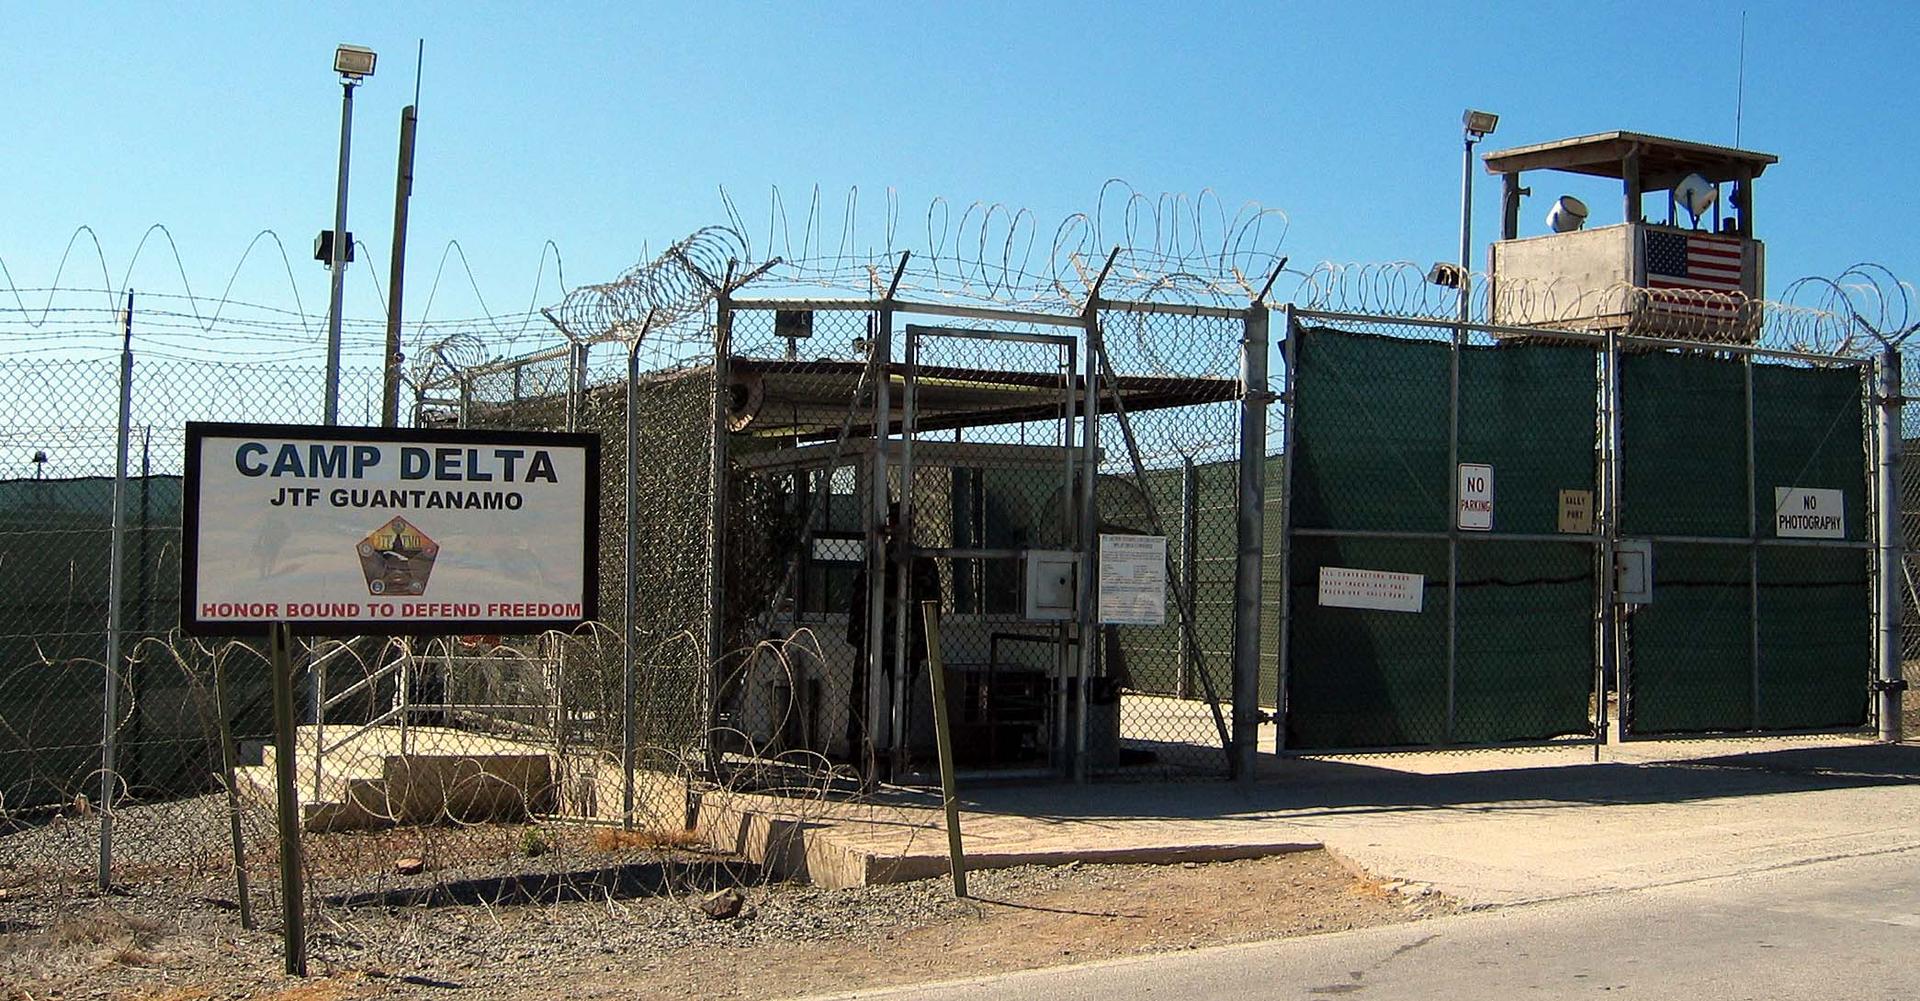 Camp Delta, Guantanamo Bay, Cuba